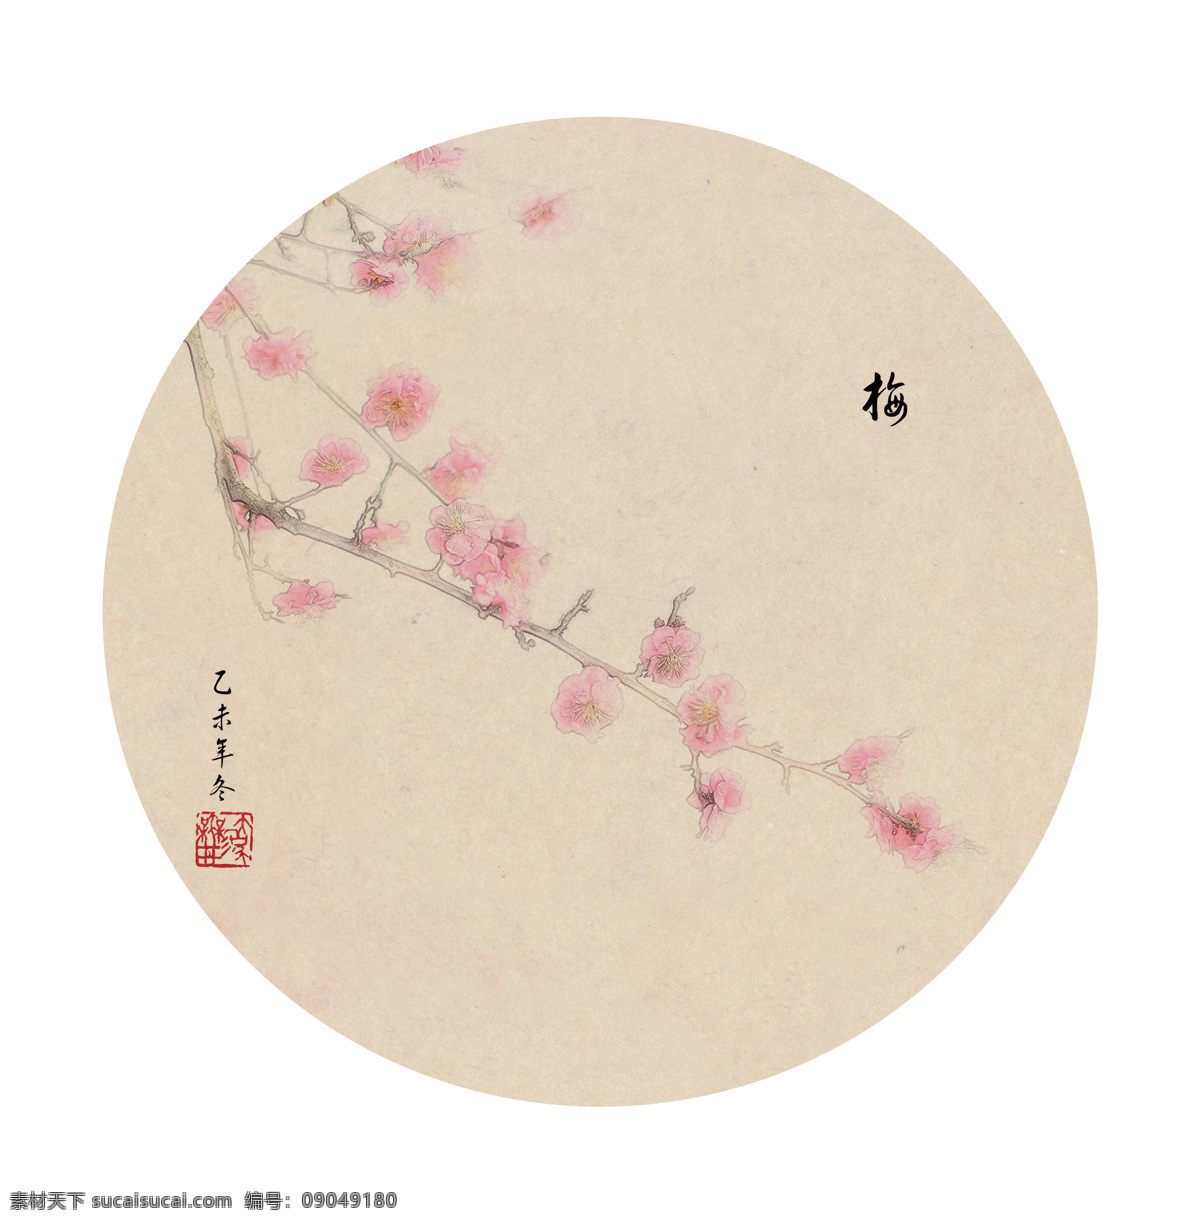 梅花 素描 荷花 中国画 后期制作 绵阳 蓝森林 文化艺术 绘画书法